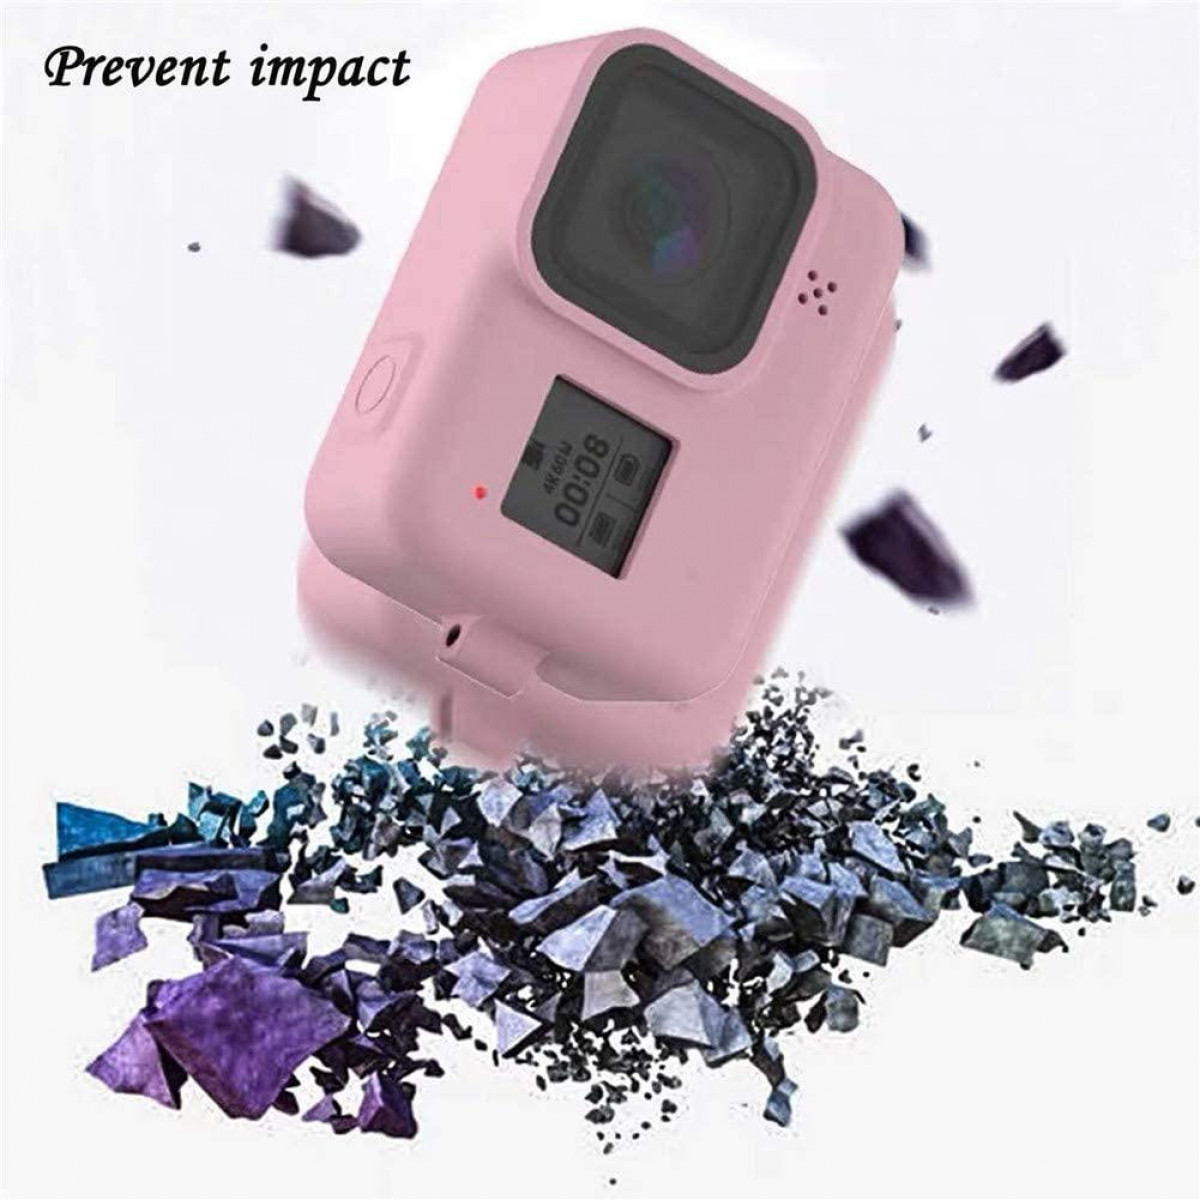 Silikonhülle Black und rosa INF Hero rosa - Zubehör 8 für Kamera Tasche, GoPro